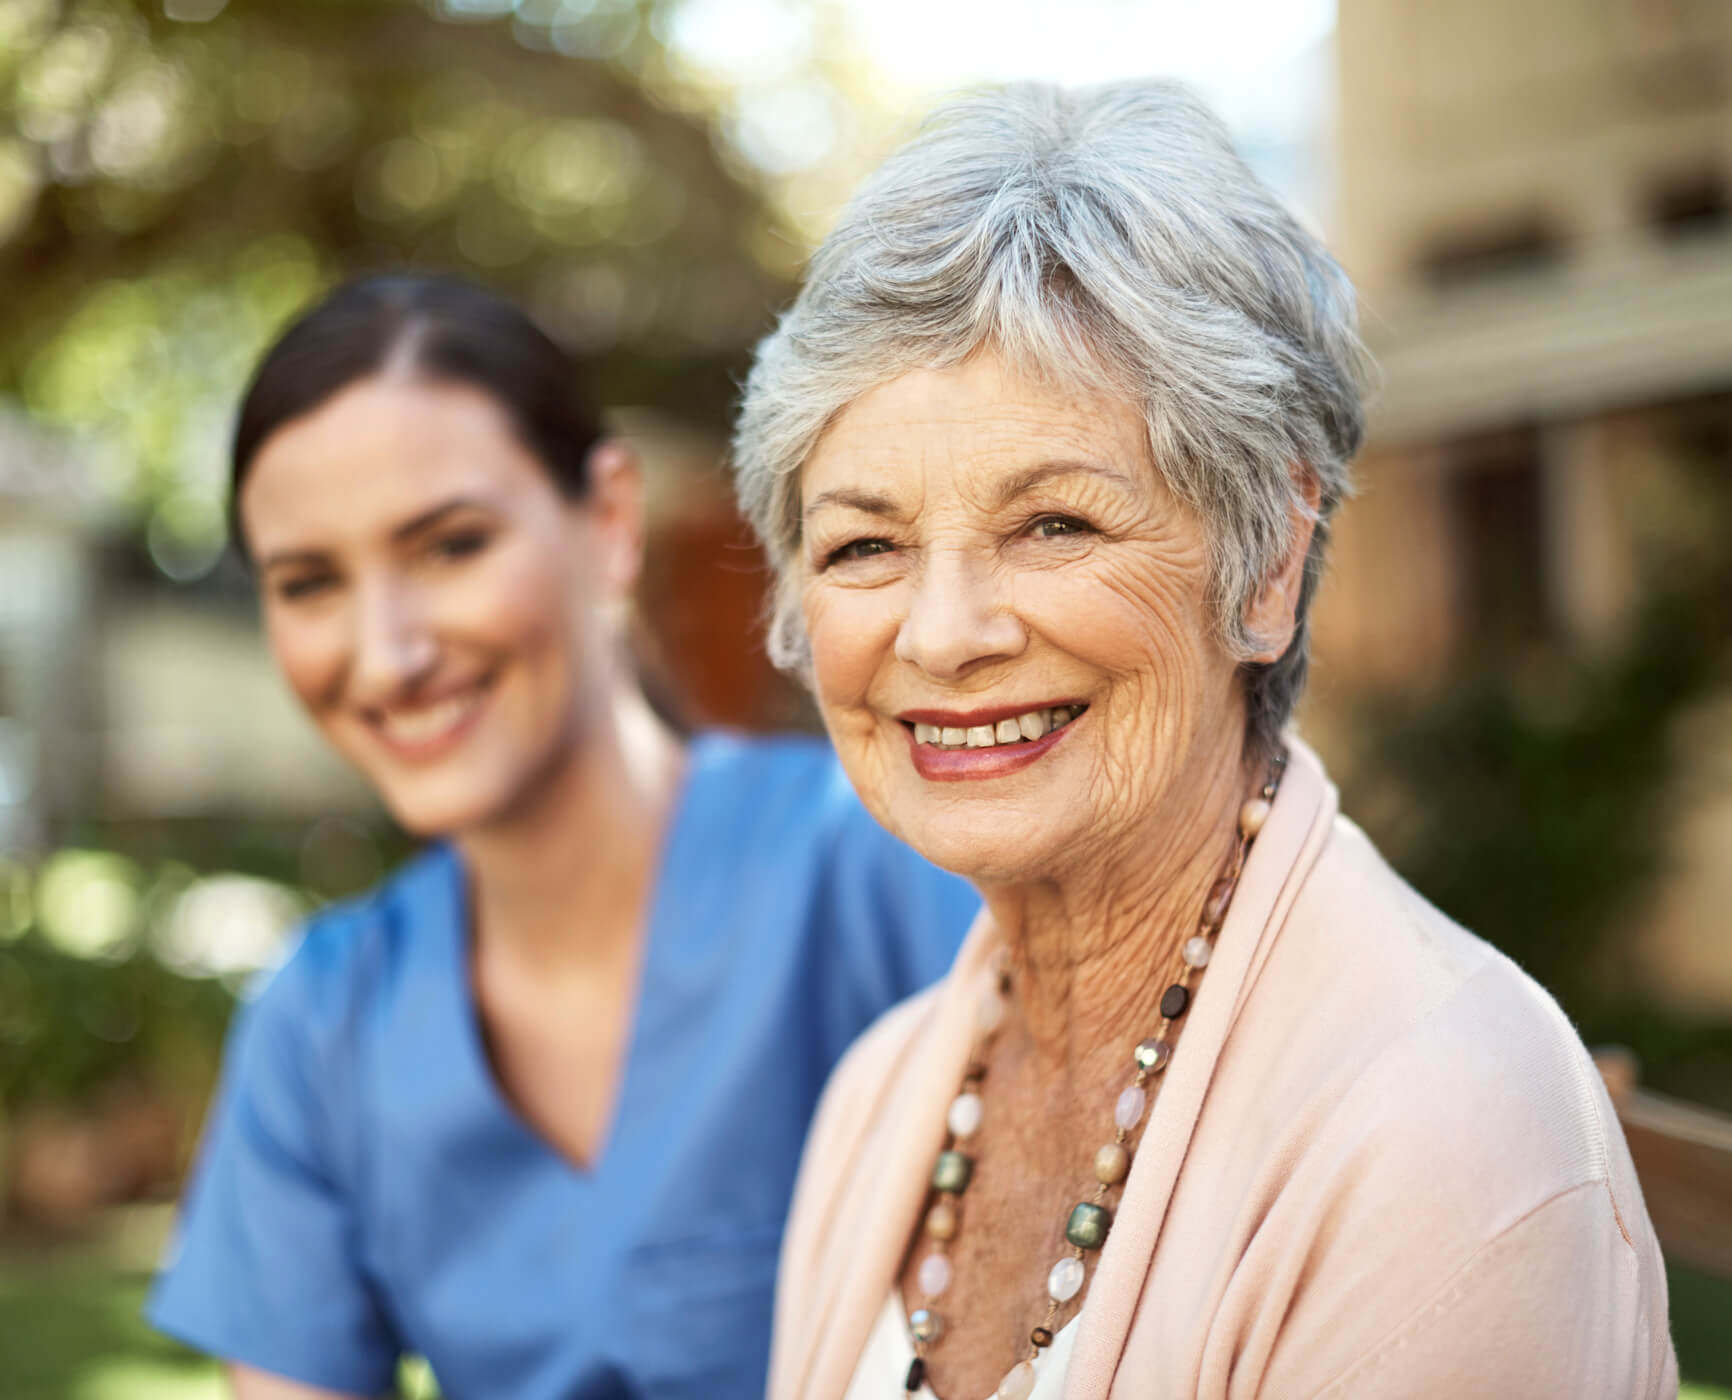 Senior lady and female nurse smiling